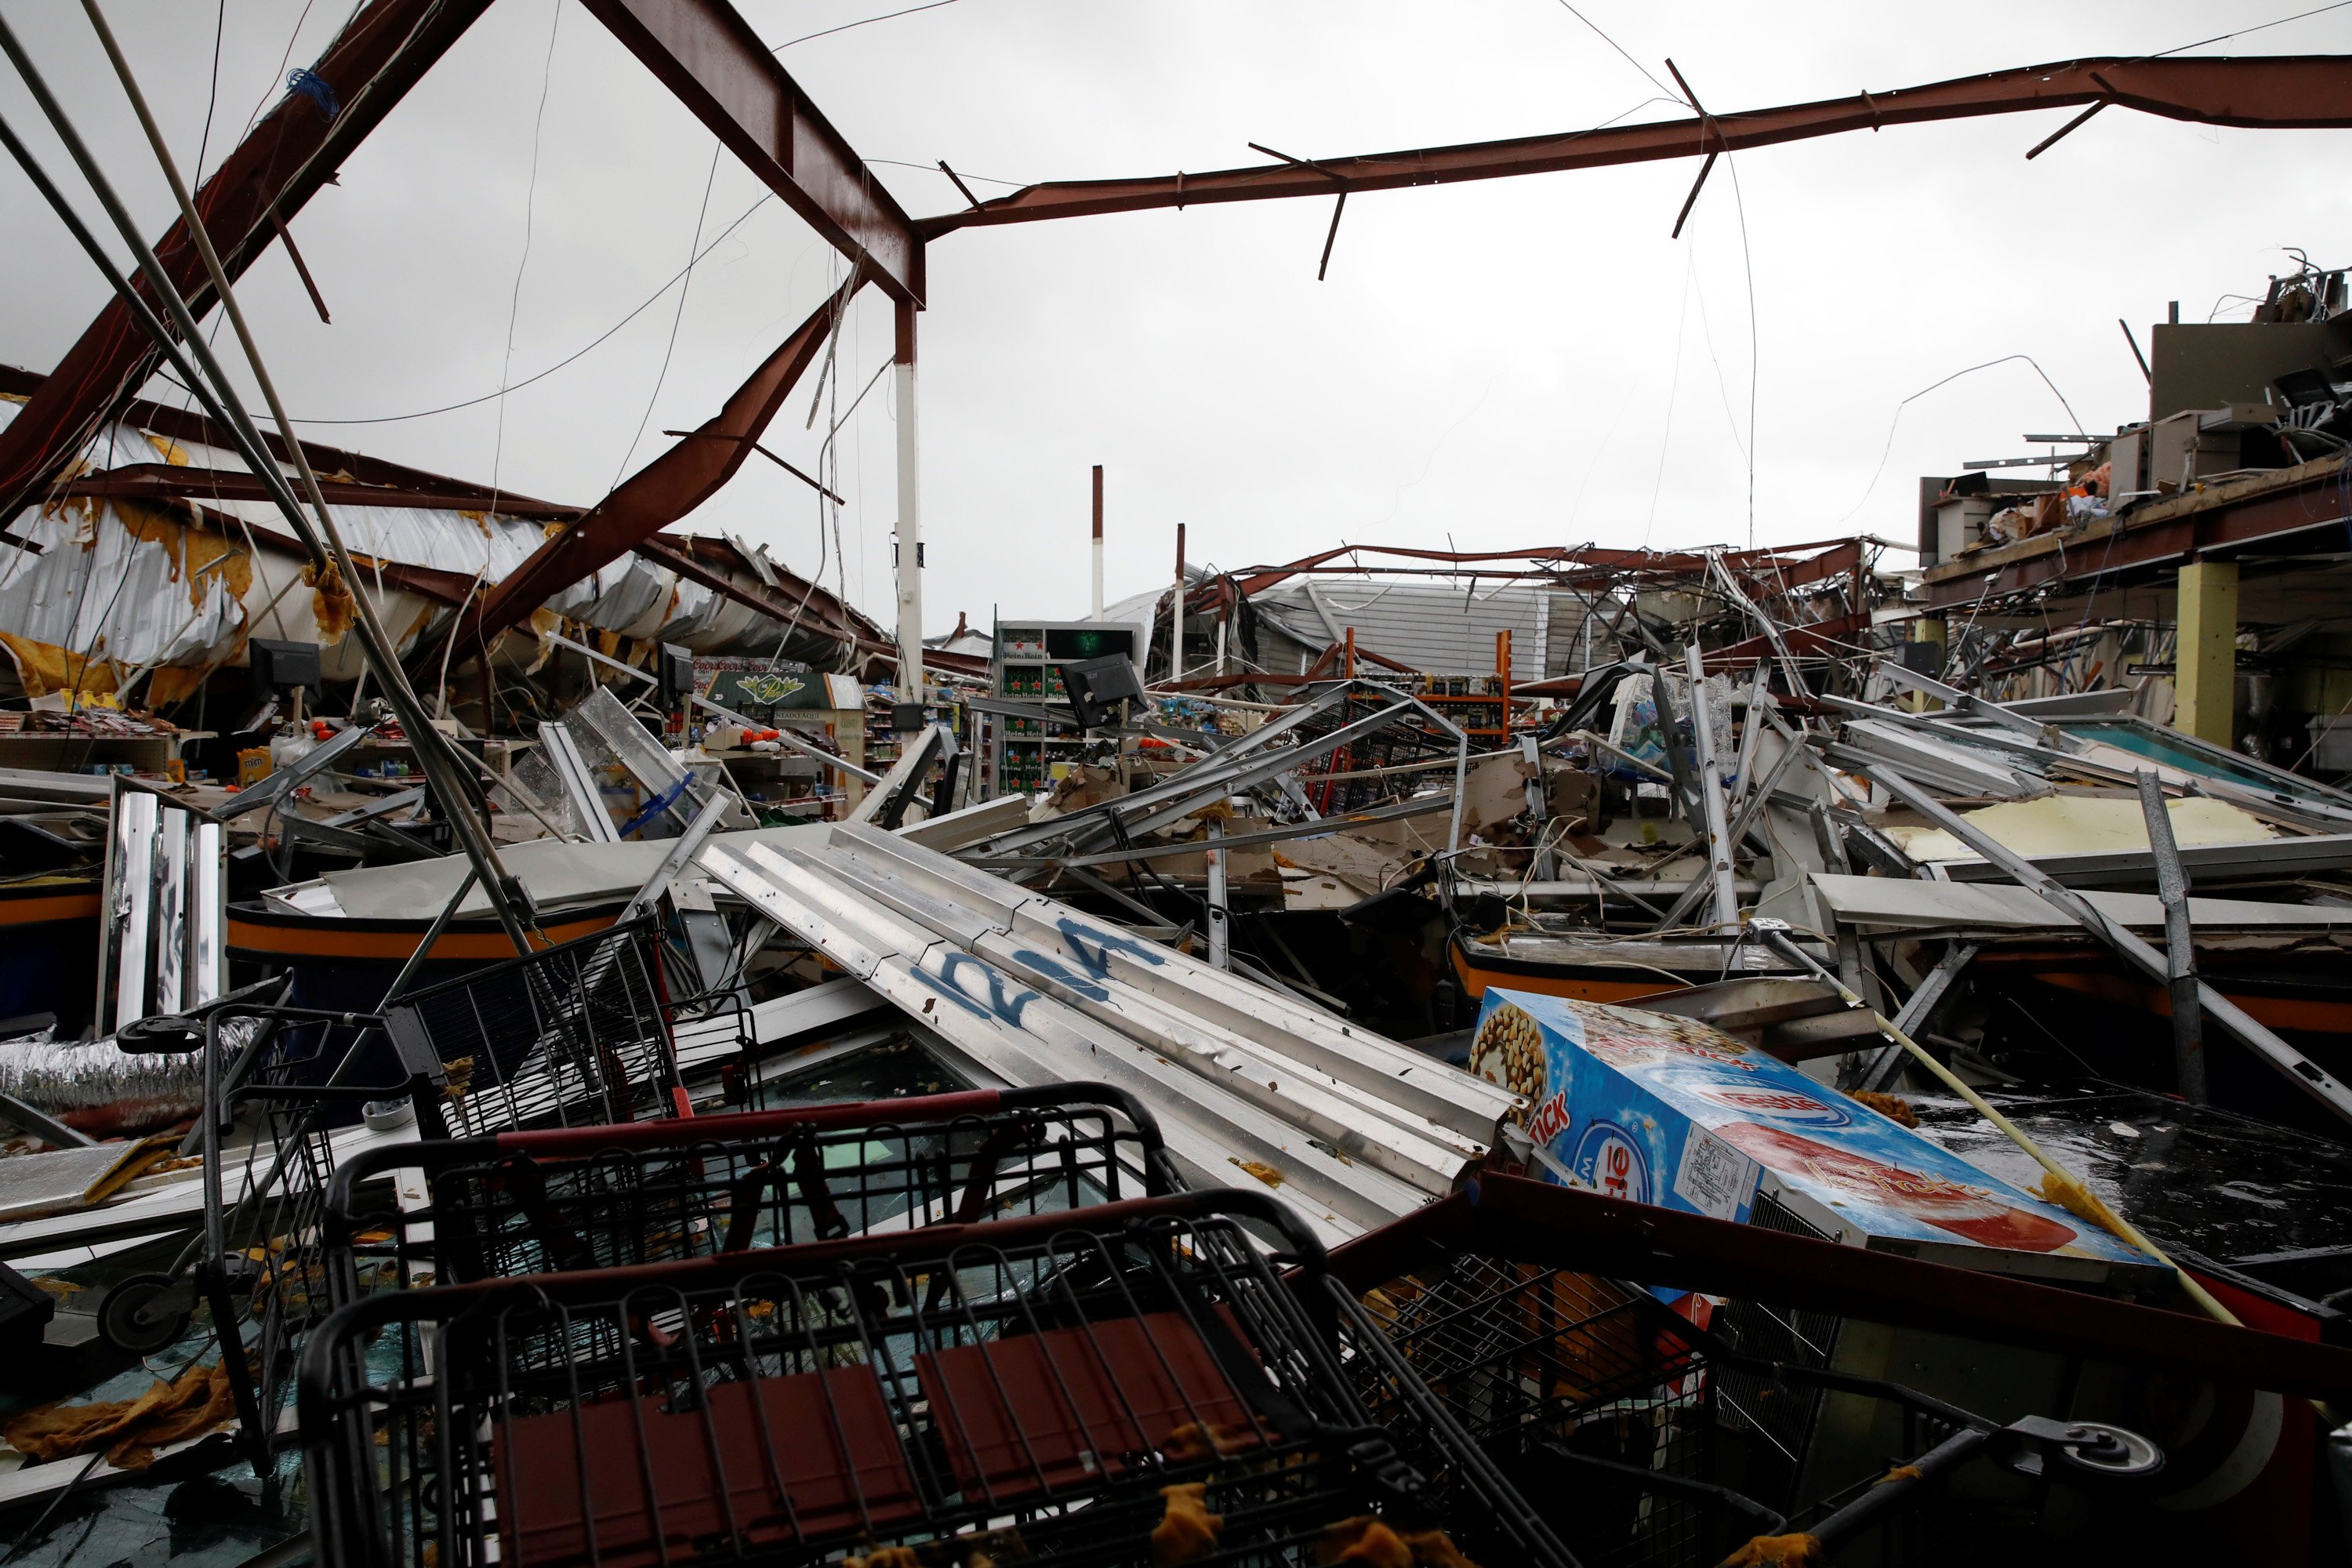 El huracán destruyó un supermercado en Guayama, Puerto Rico. (REUTERS/Carlos Garcia Rawlins)